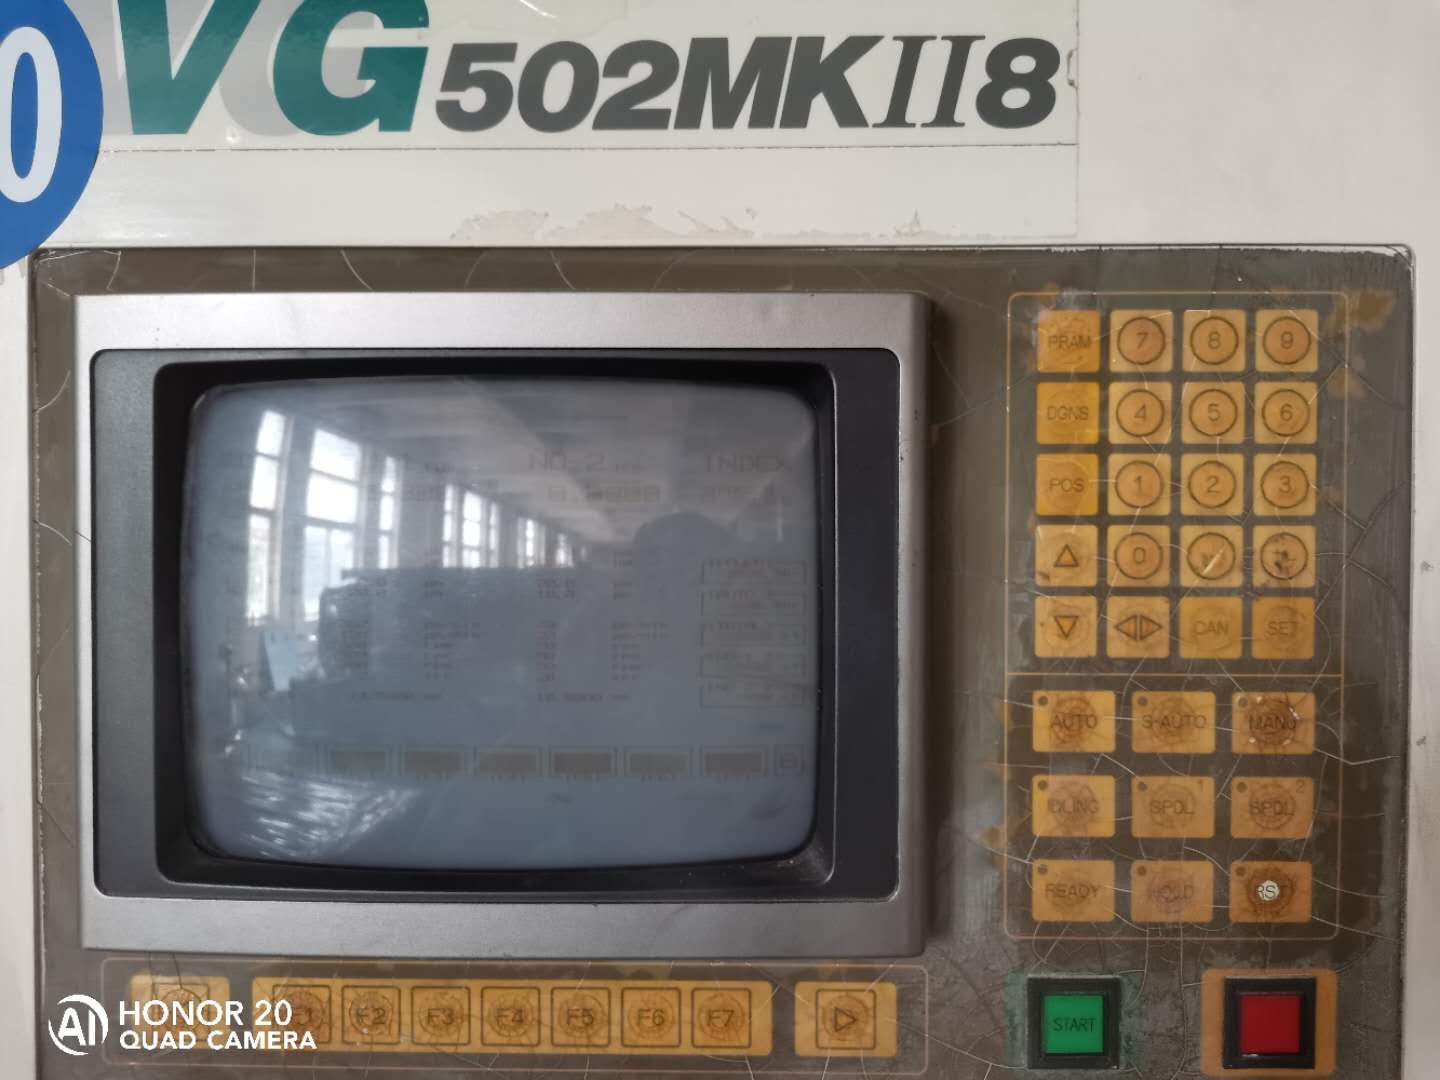 Okamoto VG502 MK II-8